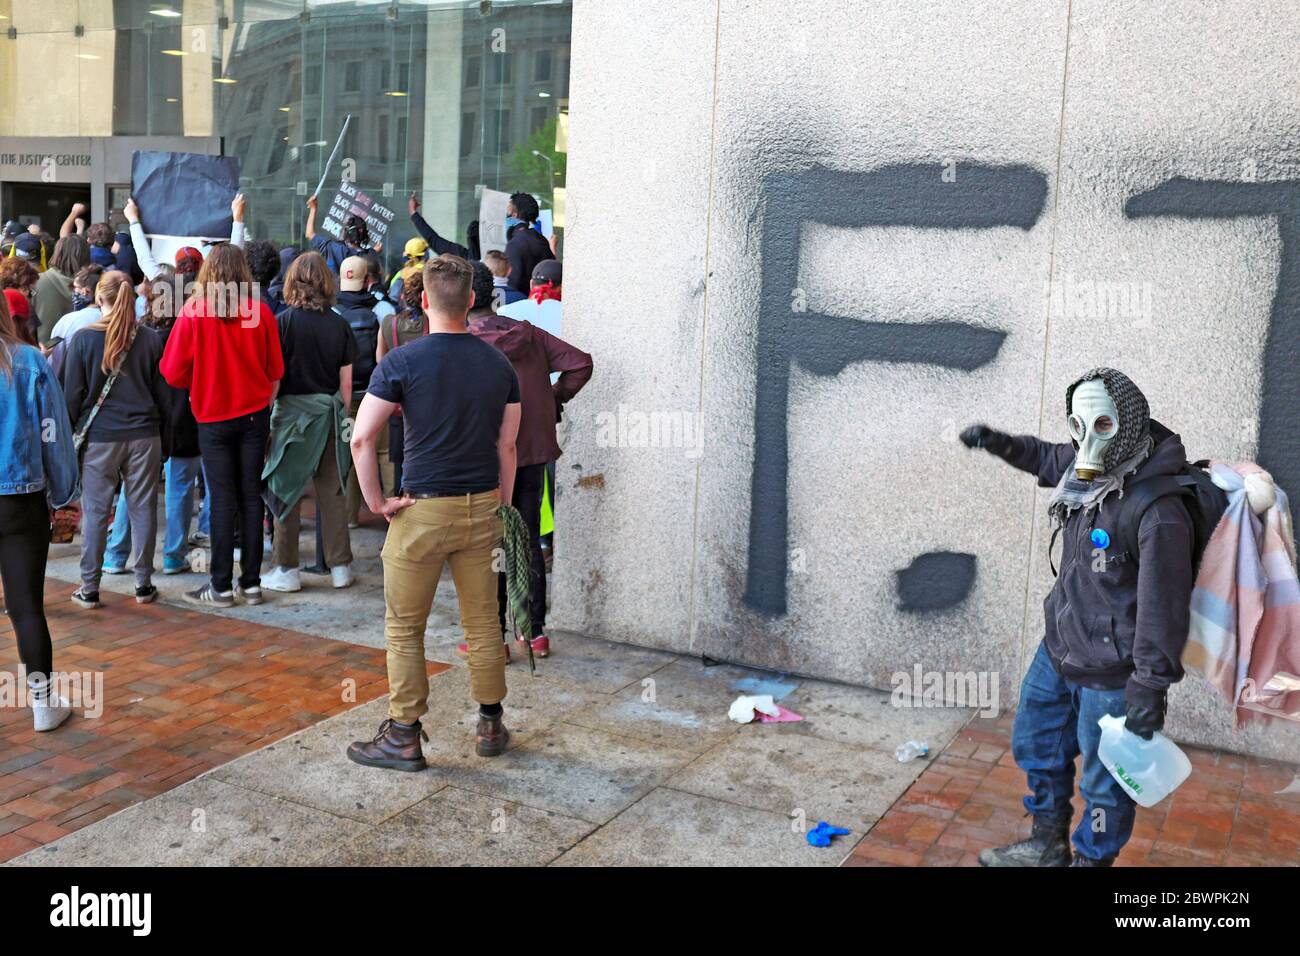 Un manifestant se tient devant un mur récemment graffié devant le Justice Center lors des manifestations à Cleveland, Ohio, États-Unis. Banque D'Images